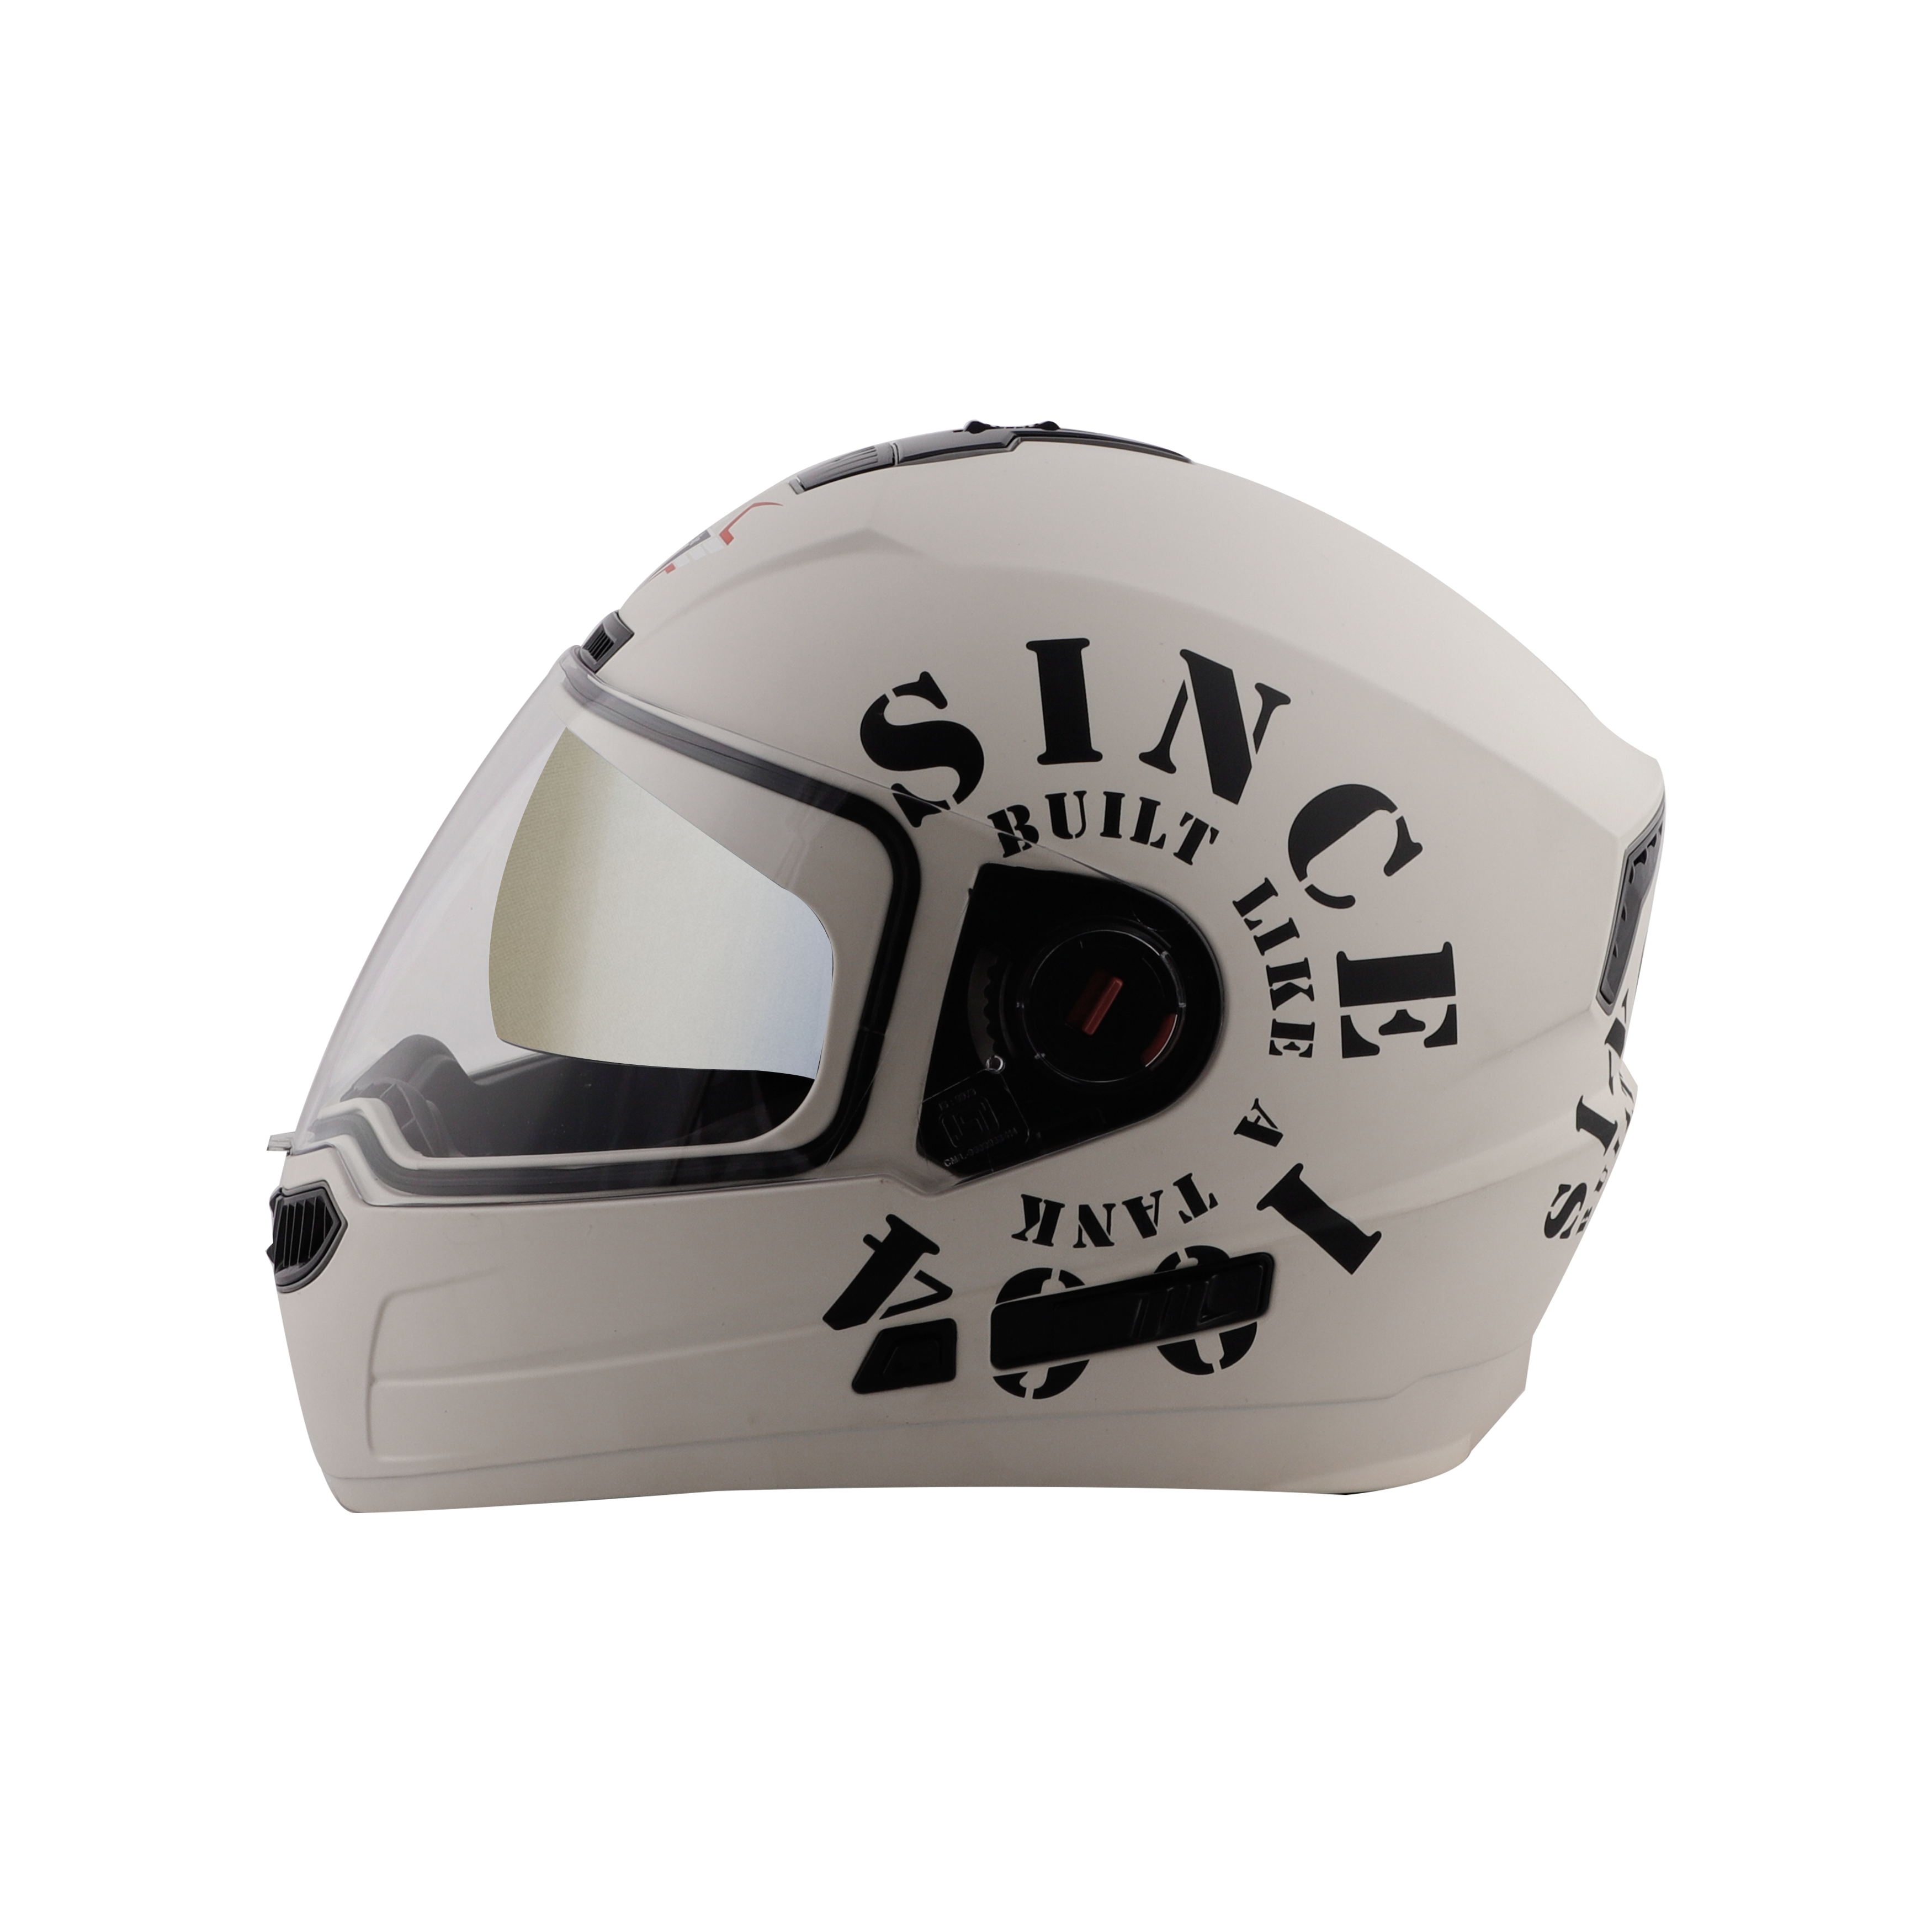 Steelbird SBA-1 Tank Double Visor Full Face Graphics Helmet, Inner Silver Sun Shield And Outer Clear Visor (Matt Off White Black)